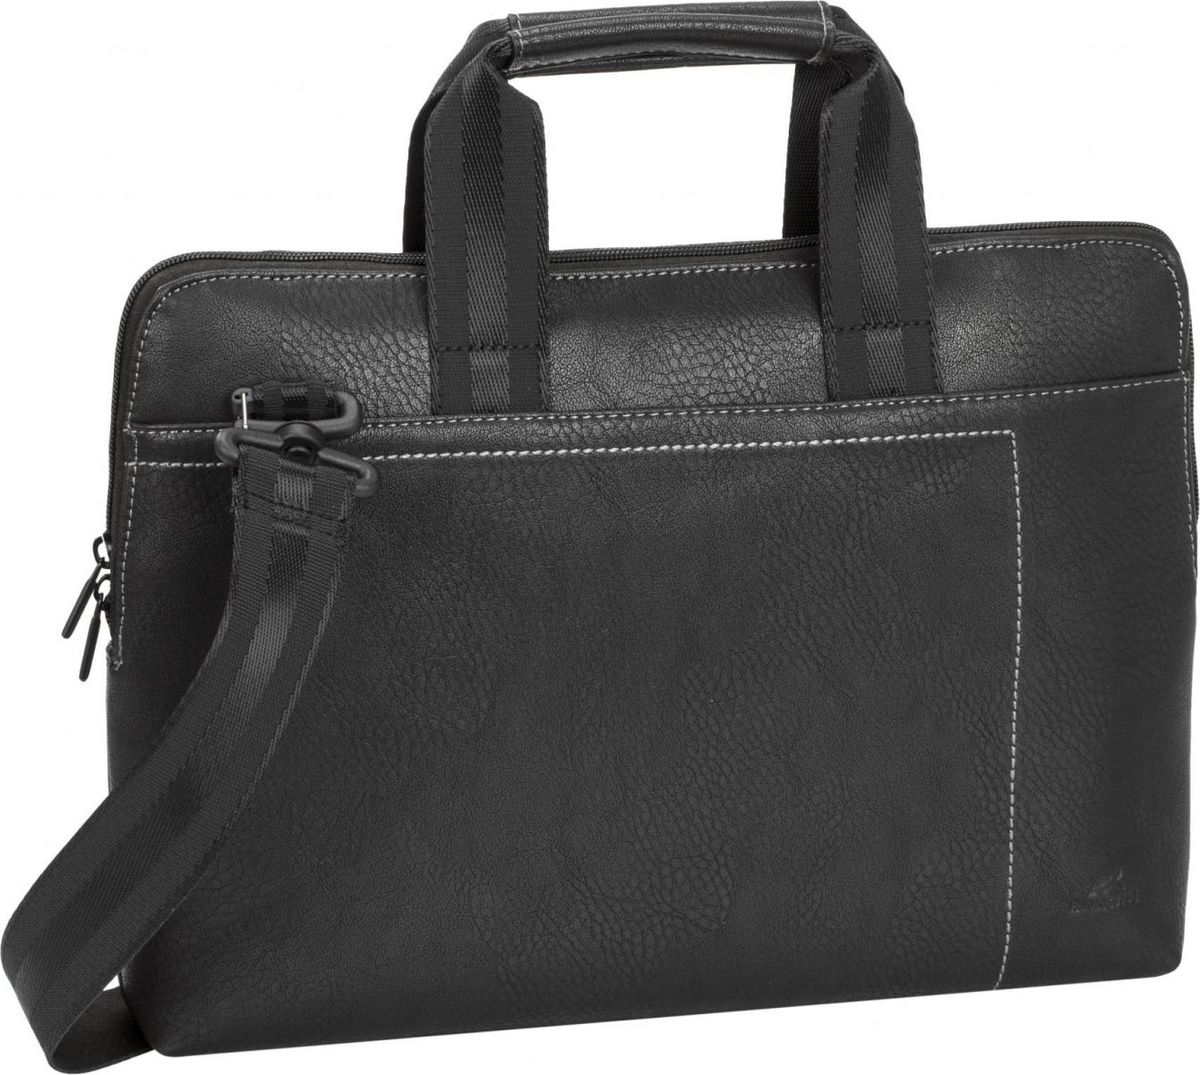 RivaCase 8920, Black сумка для ноутбука 13,3